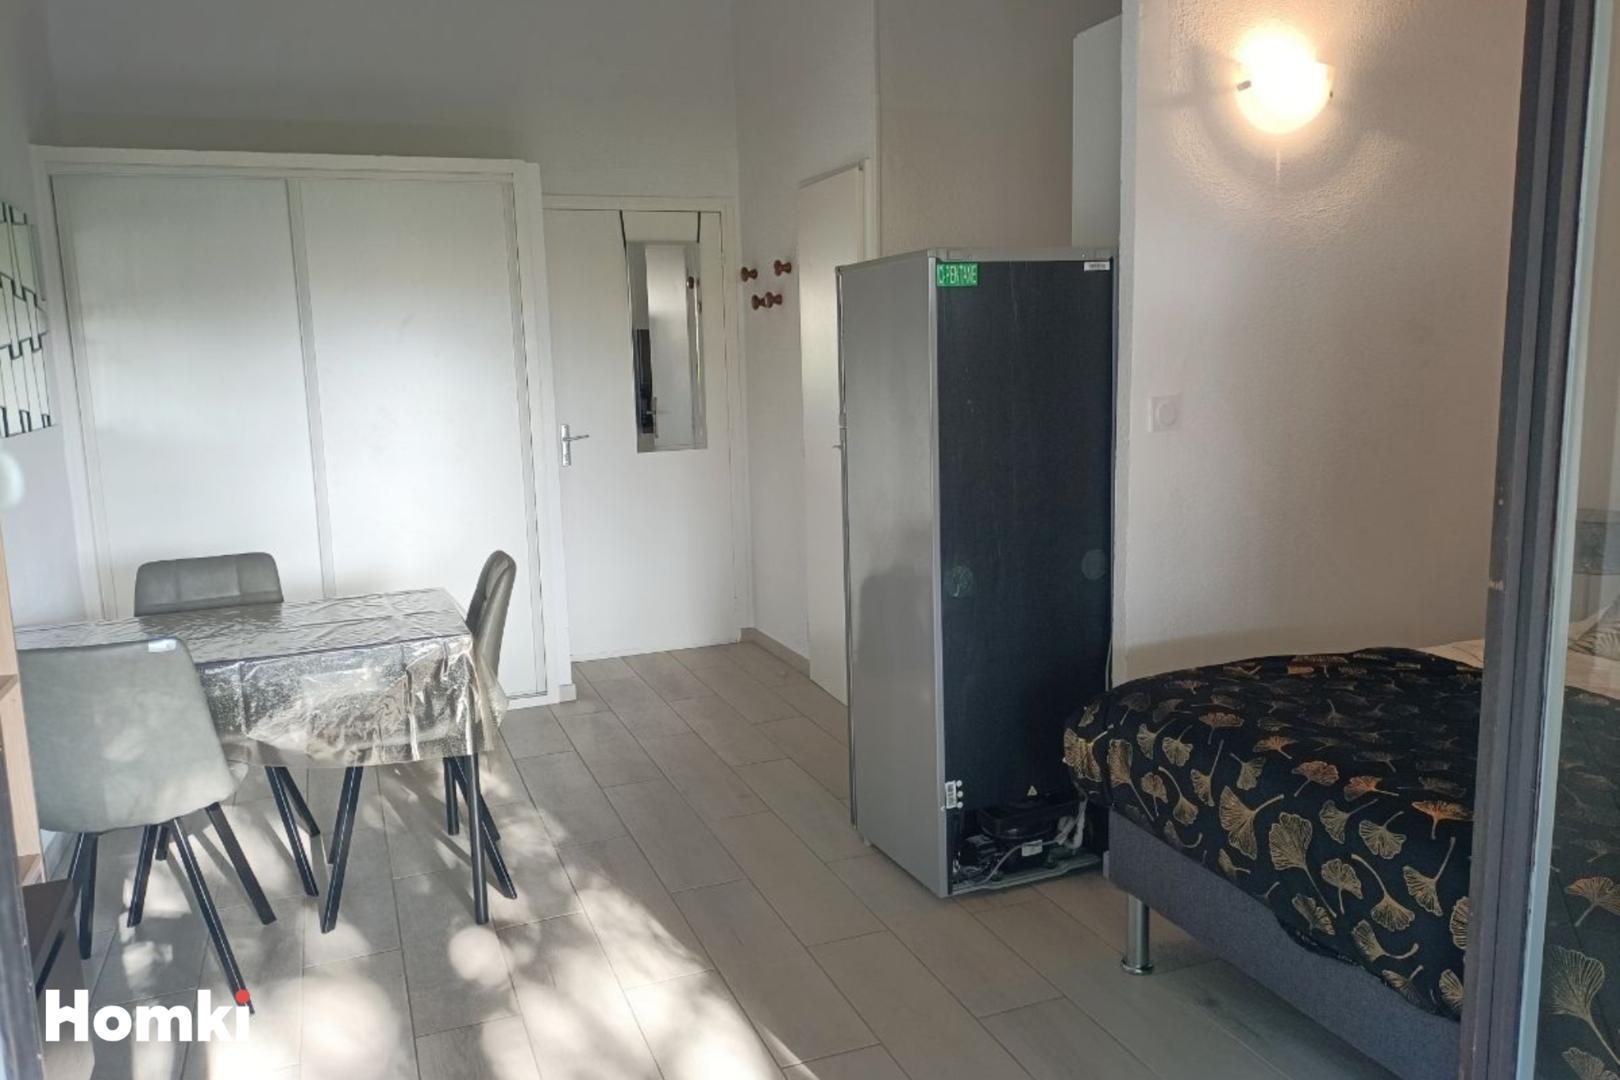 Homki - Vente Appartement  de 20.0 m² à Cap-d'Agde 34300